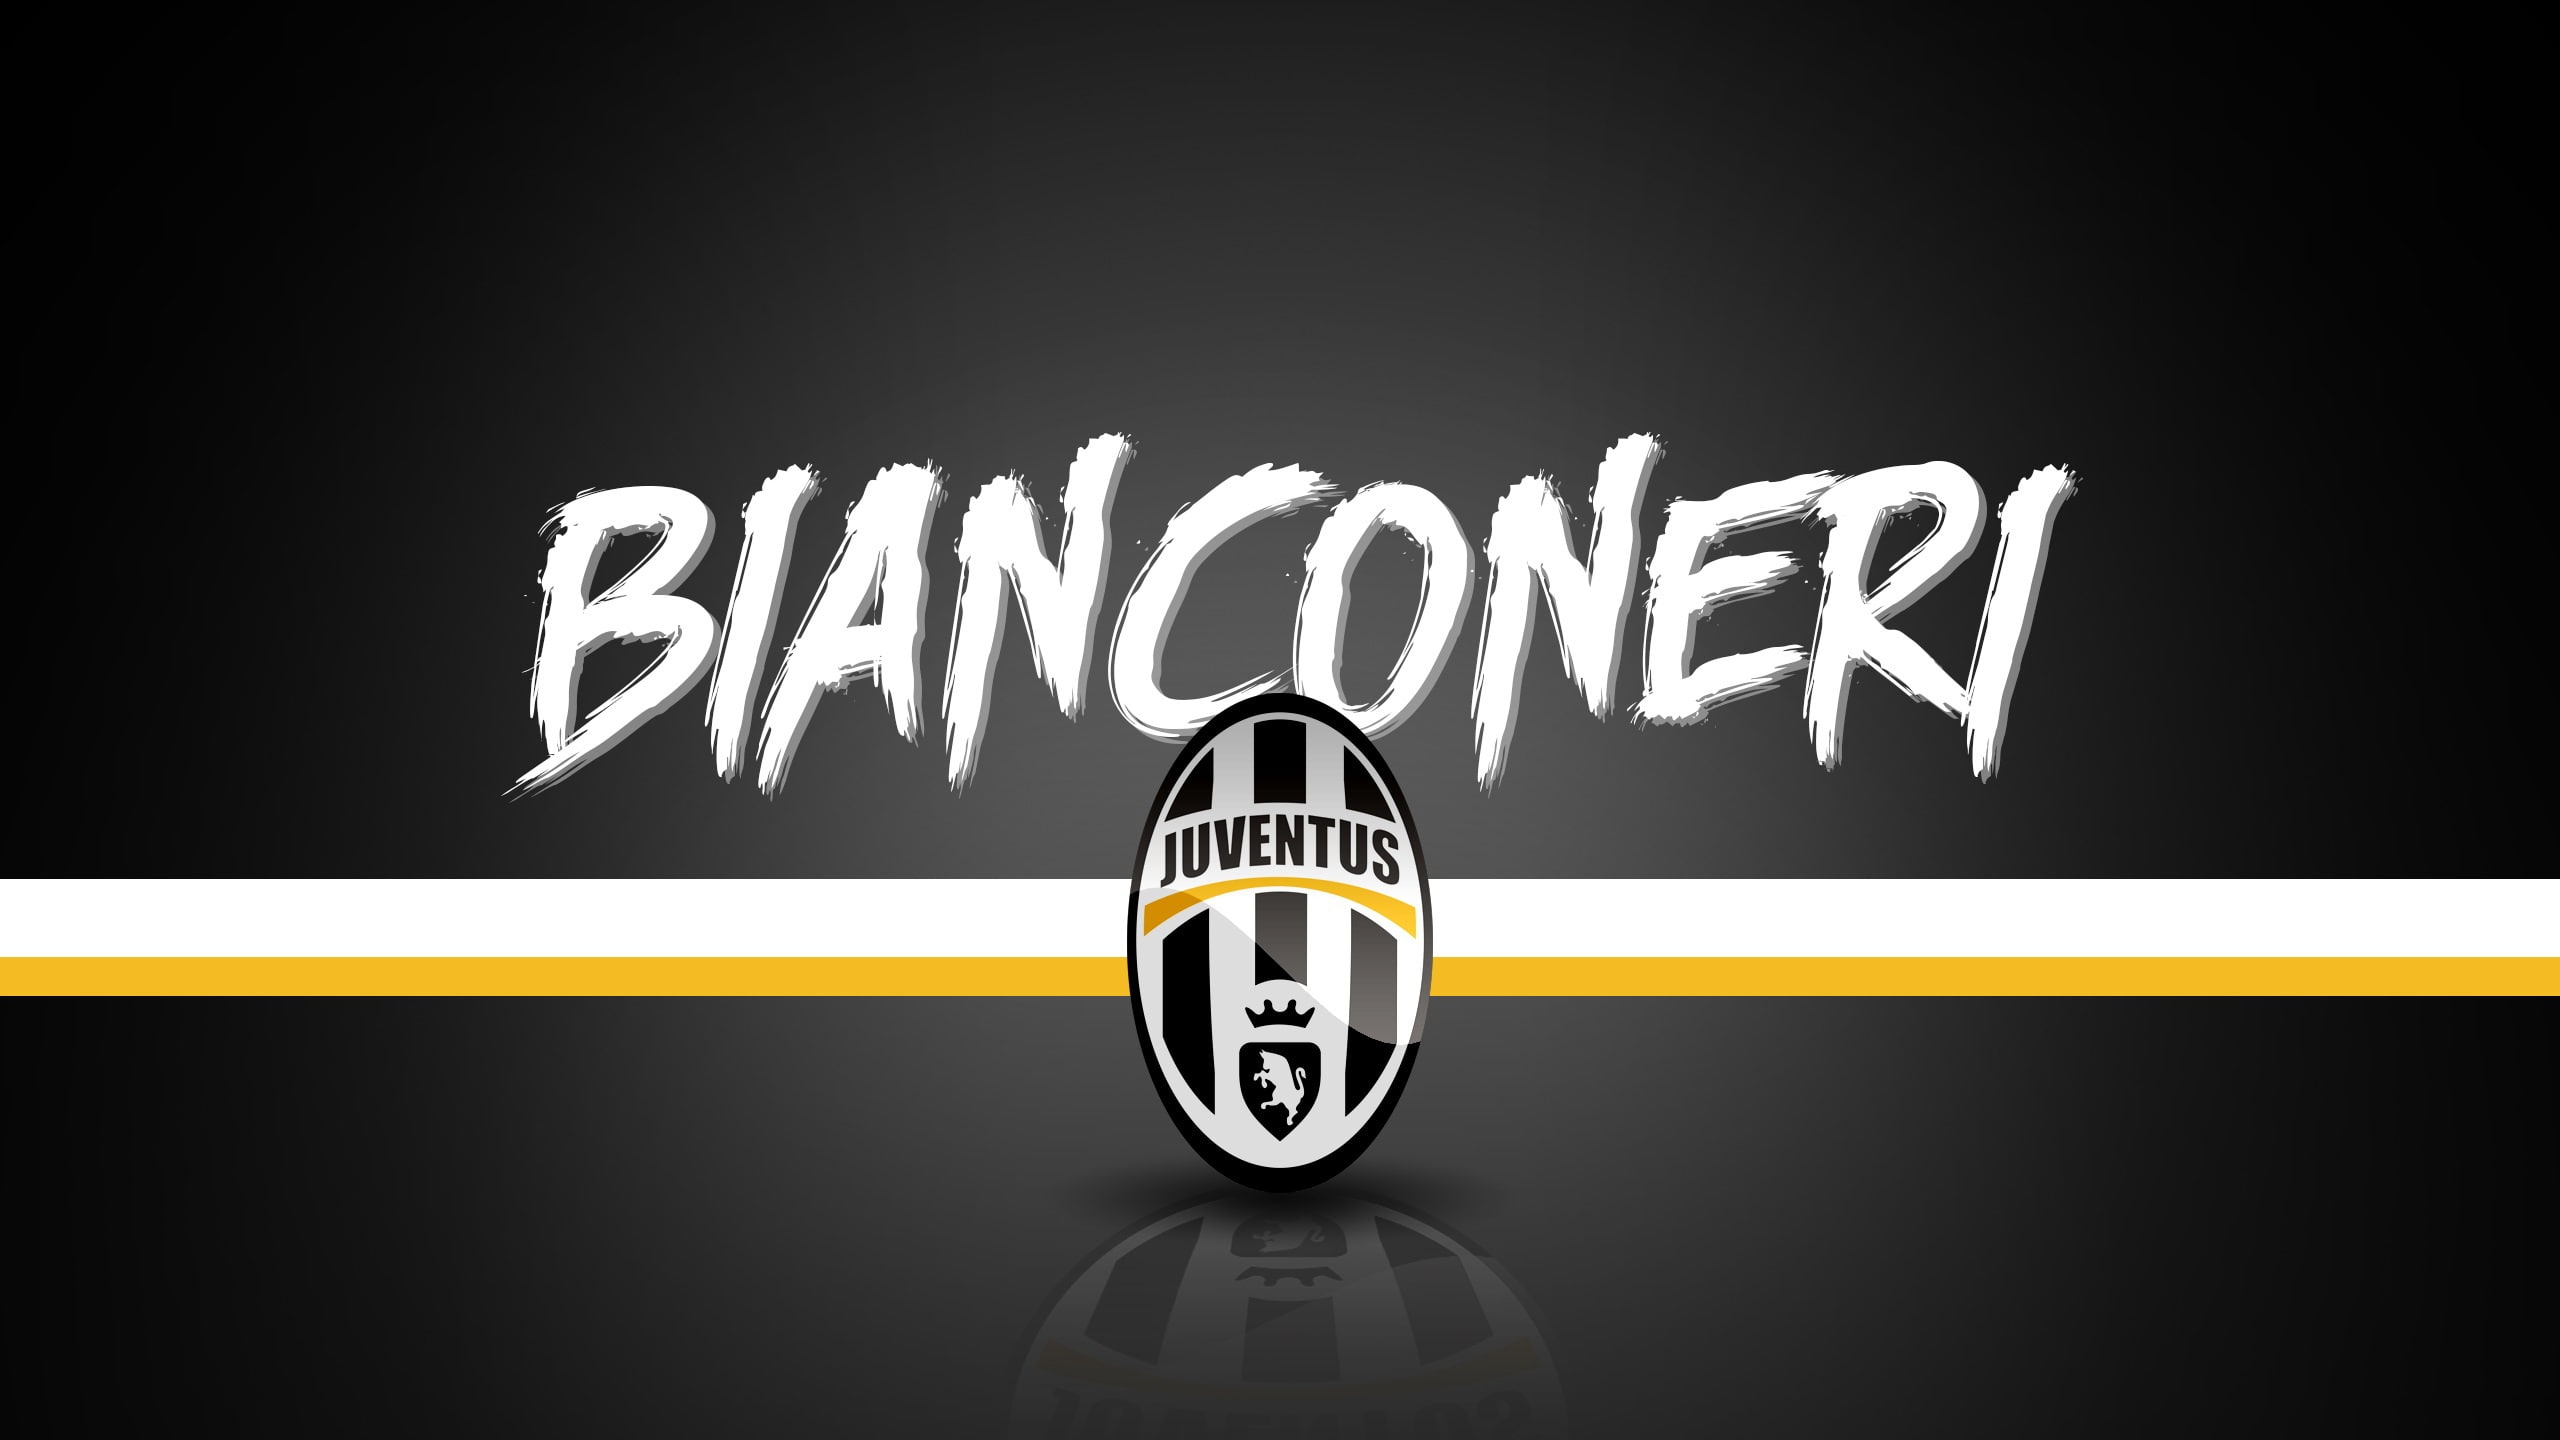 wallpaper, sport, logo, football, Juventus, Serie A